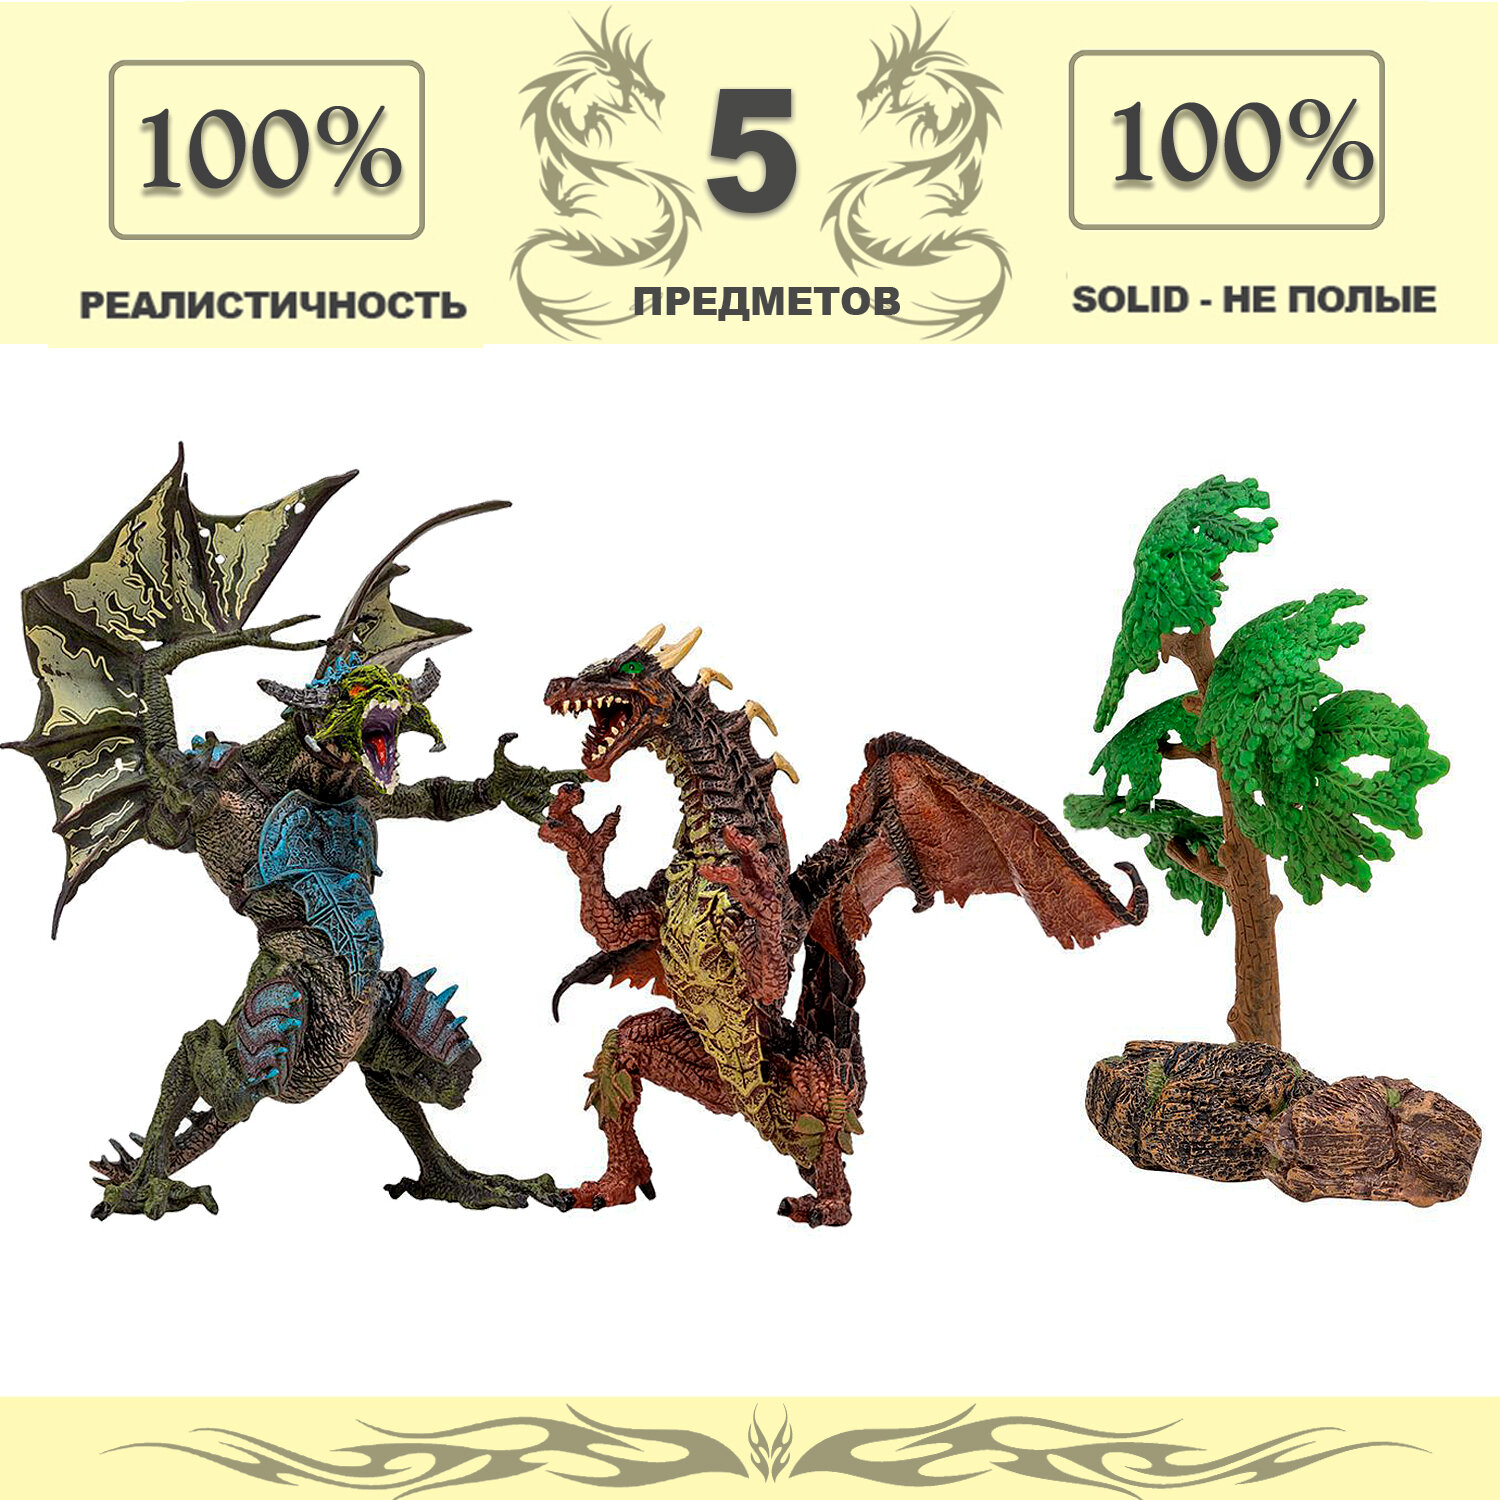 Драконы и динозавры для детей серии "Мир драконов" (2 дракона игрушки, 3 аксессуара в наборе с фигурками)